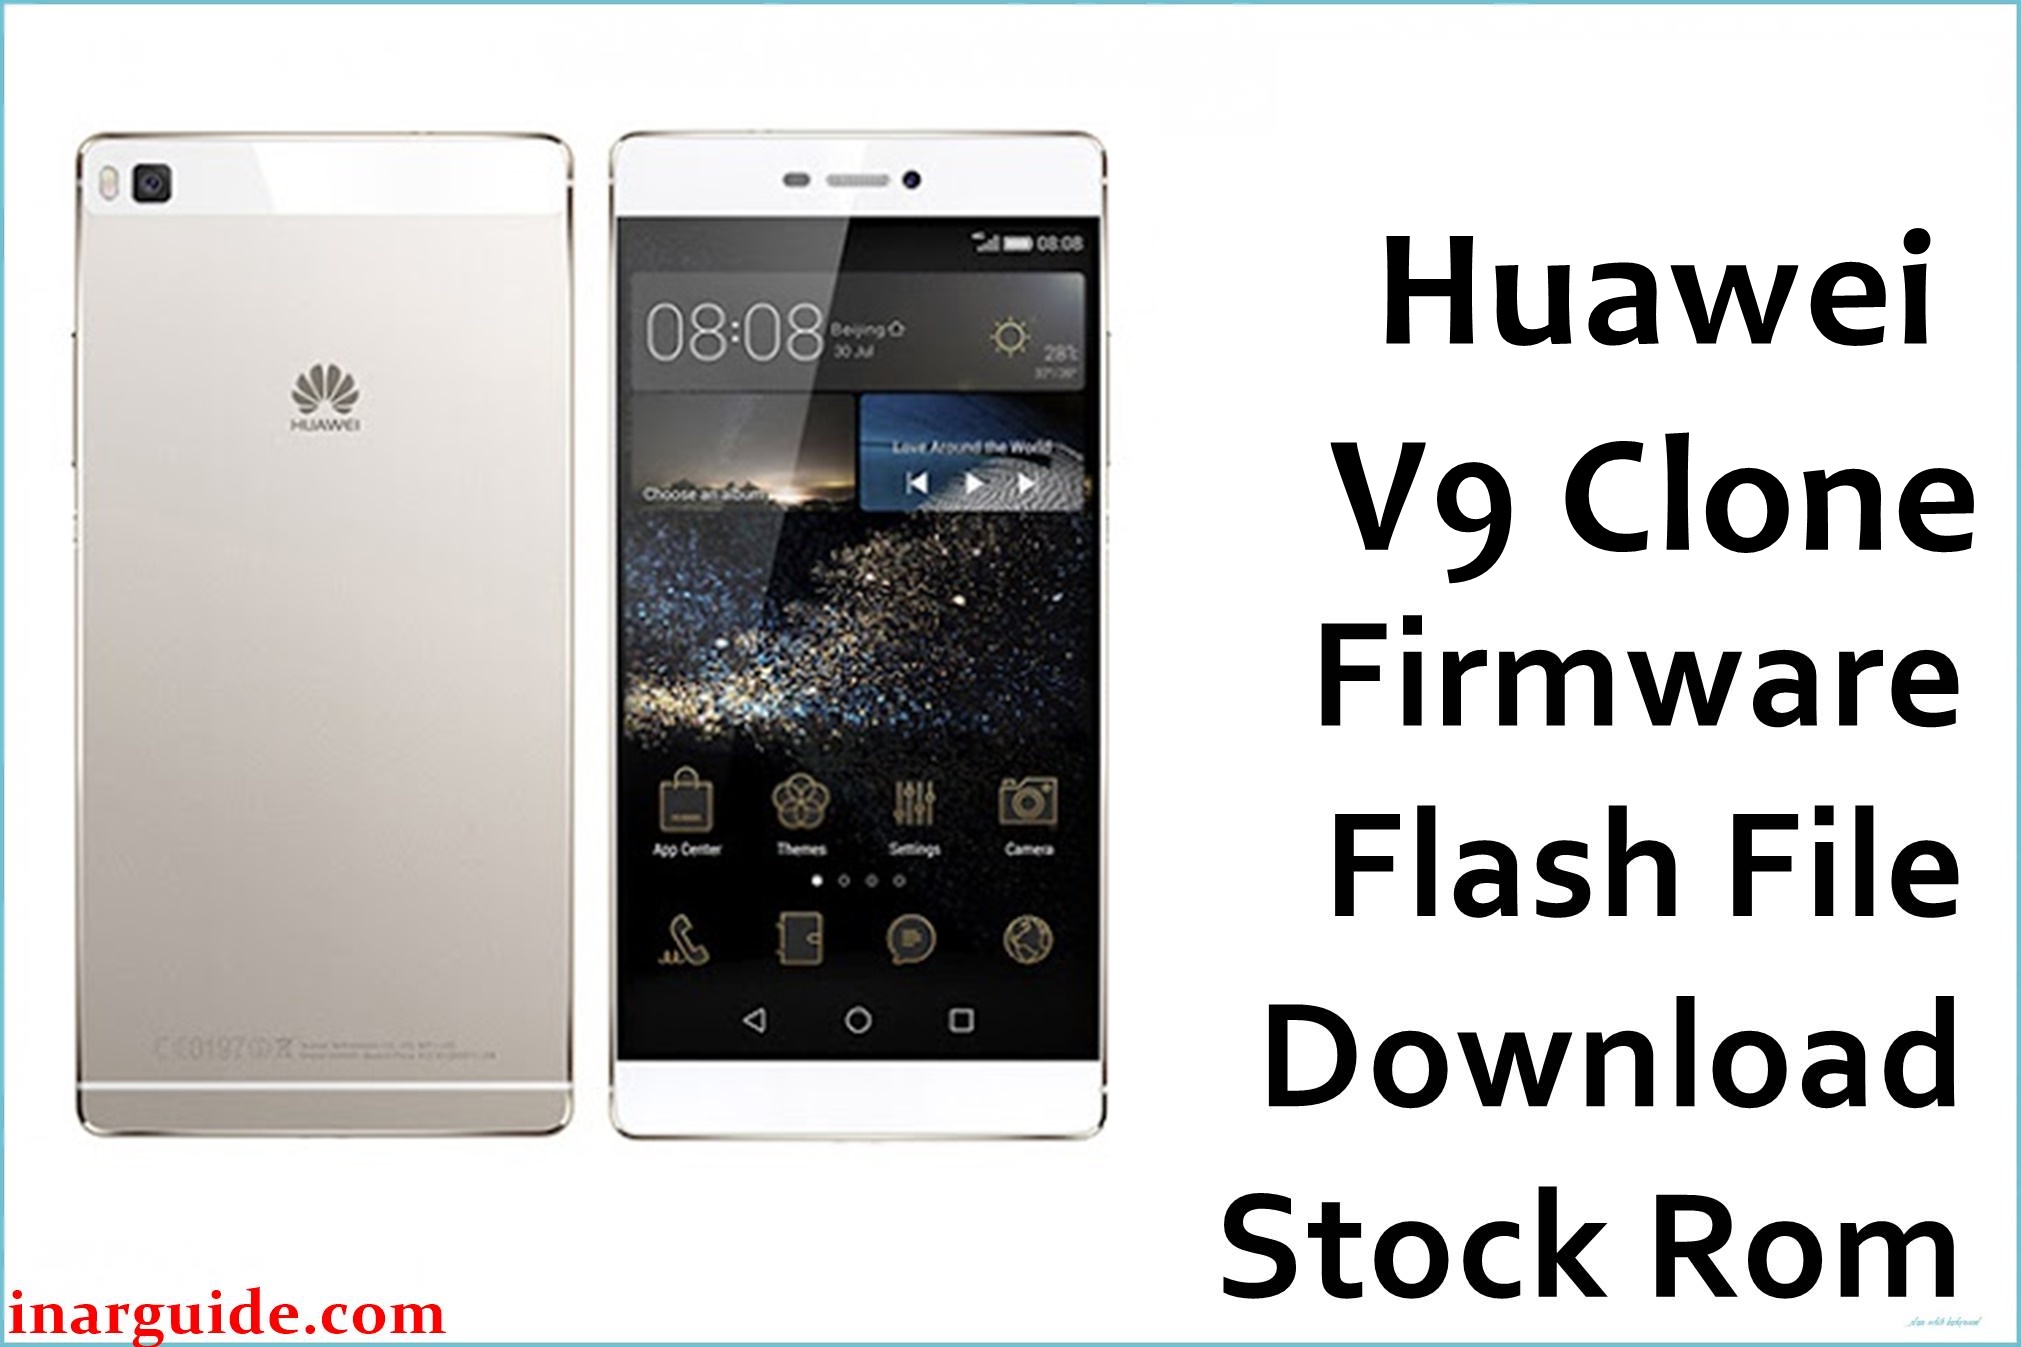 Huawei V9 Clone